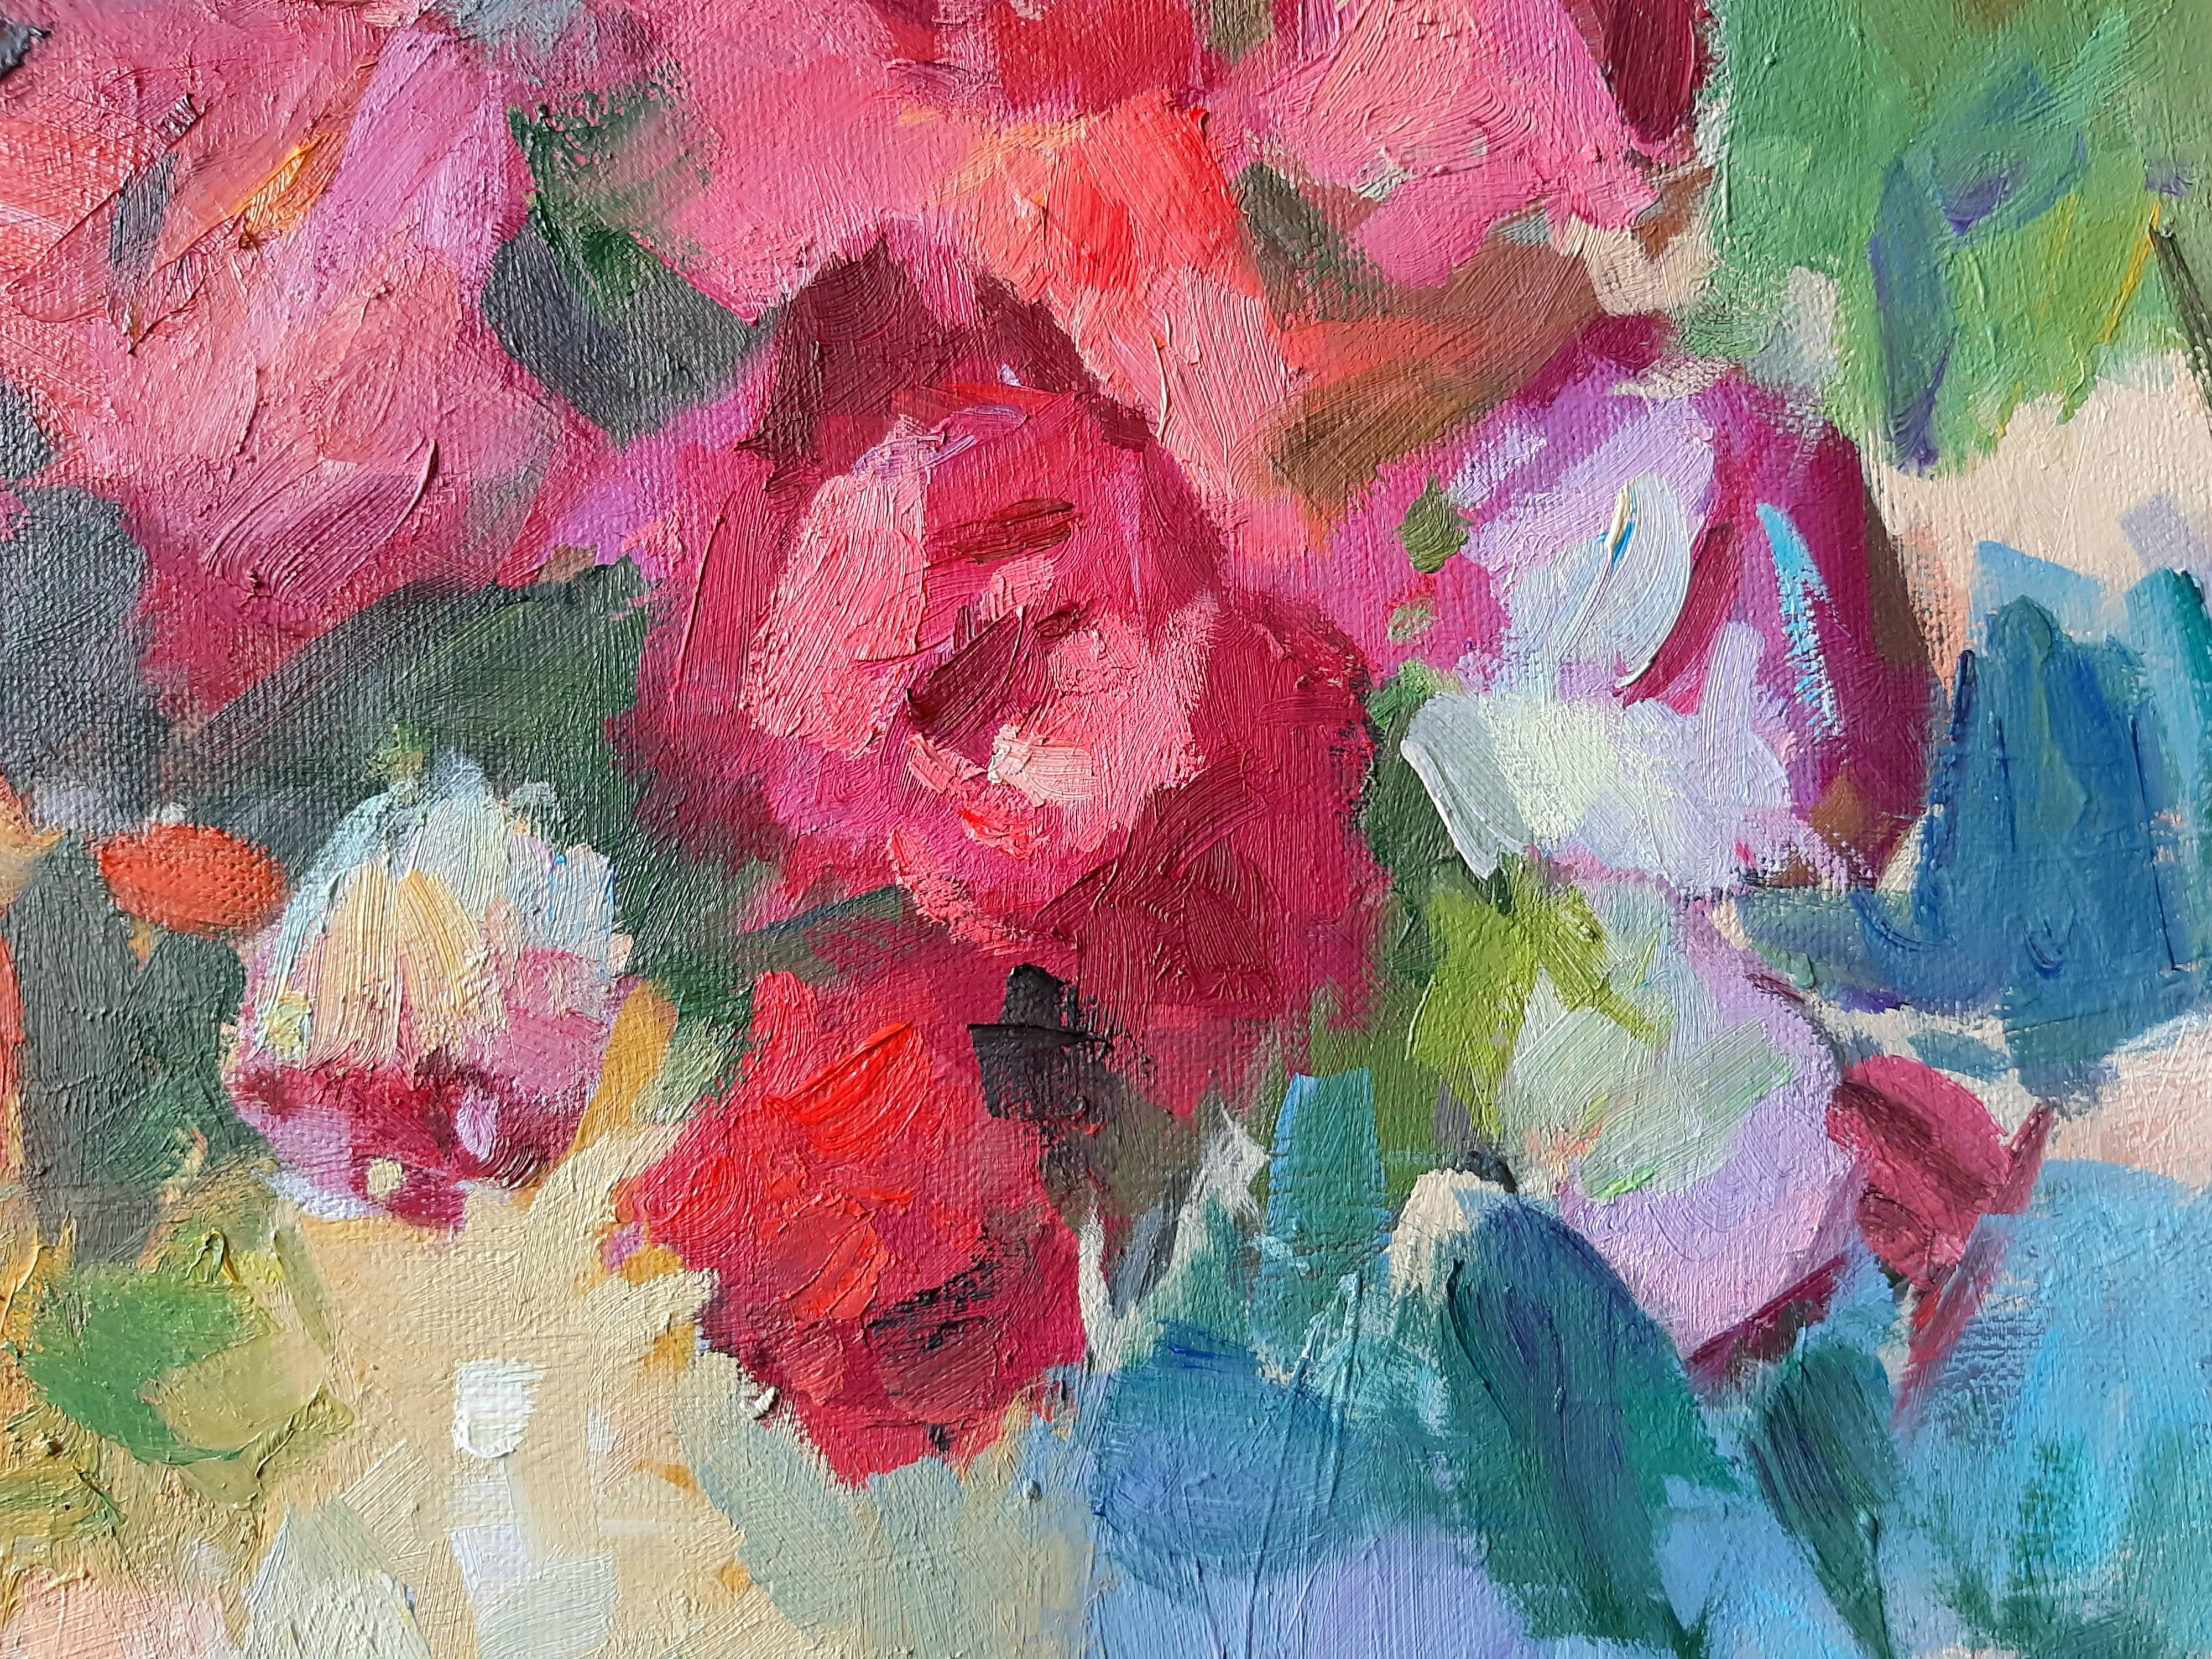 July Roses - Stillleben, Ölgemälde auf Leinwand in Rot, Blau, Gelb, Grün, Weiß und Lila – Painting von Valeriy Zalishchuk